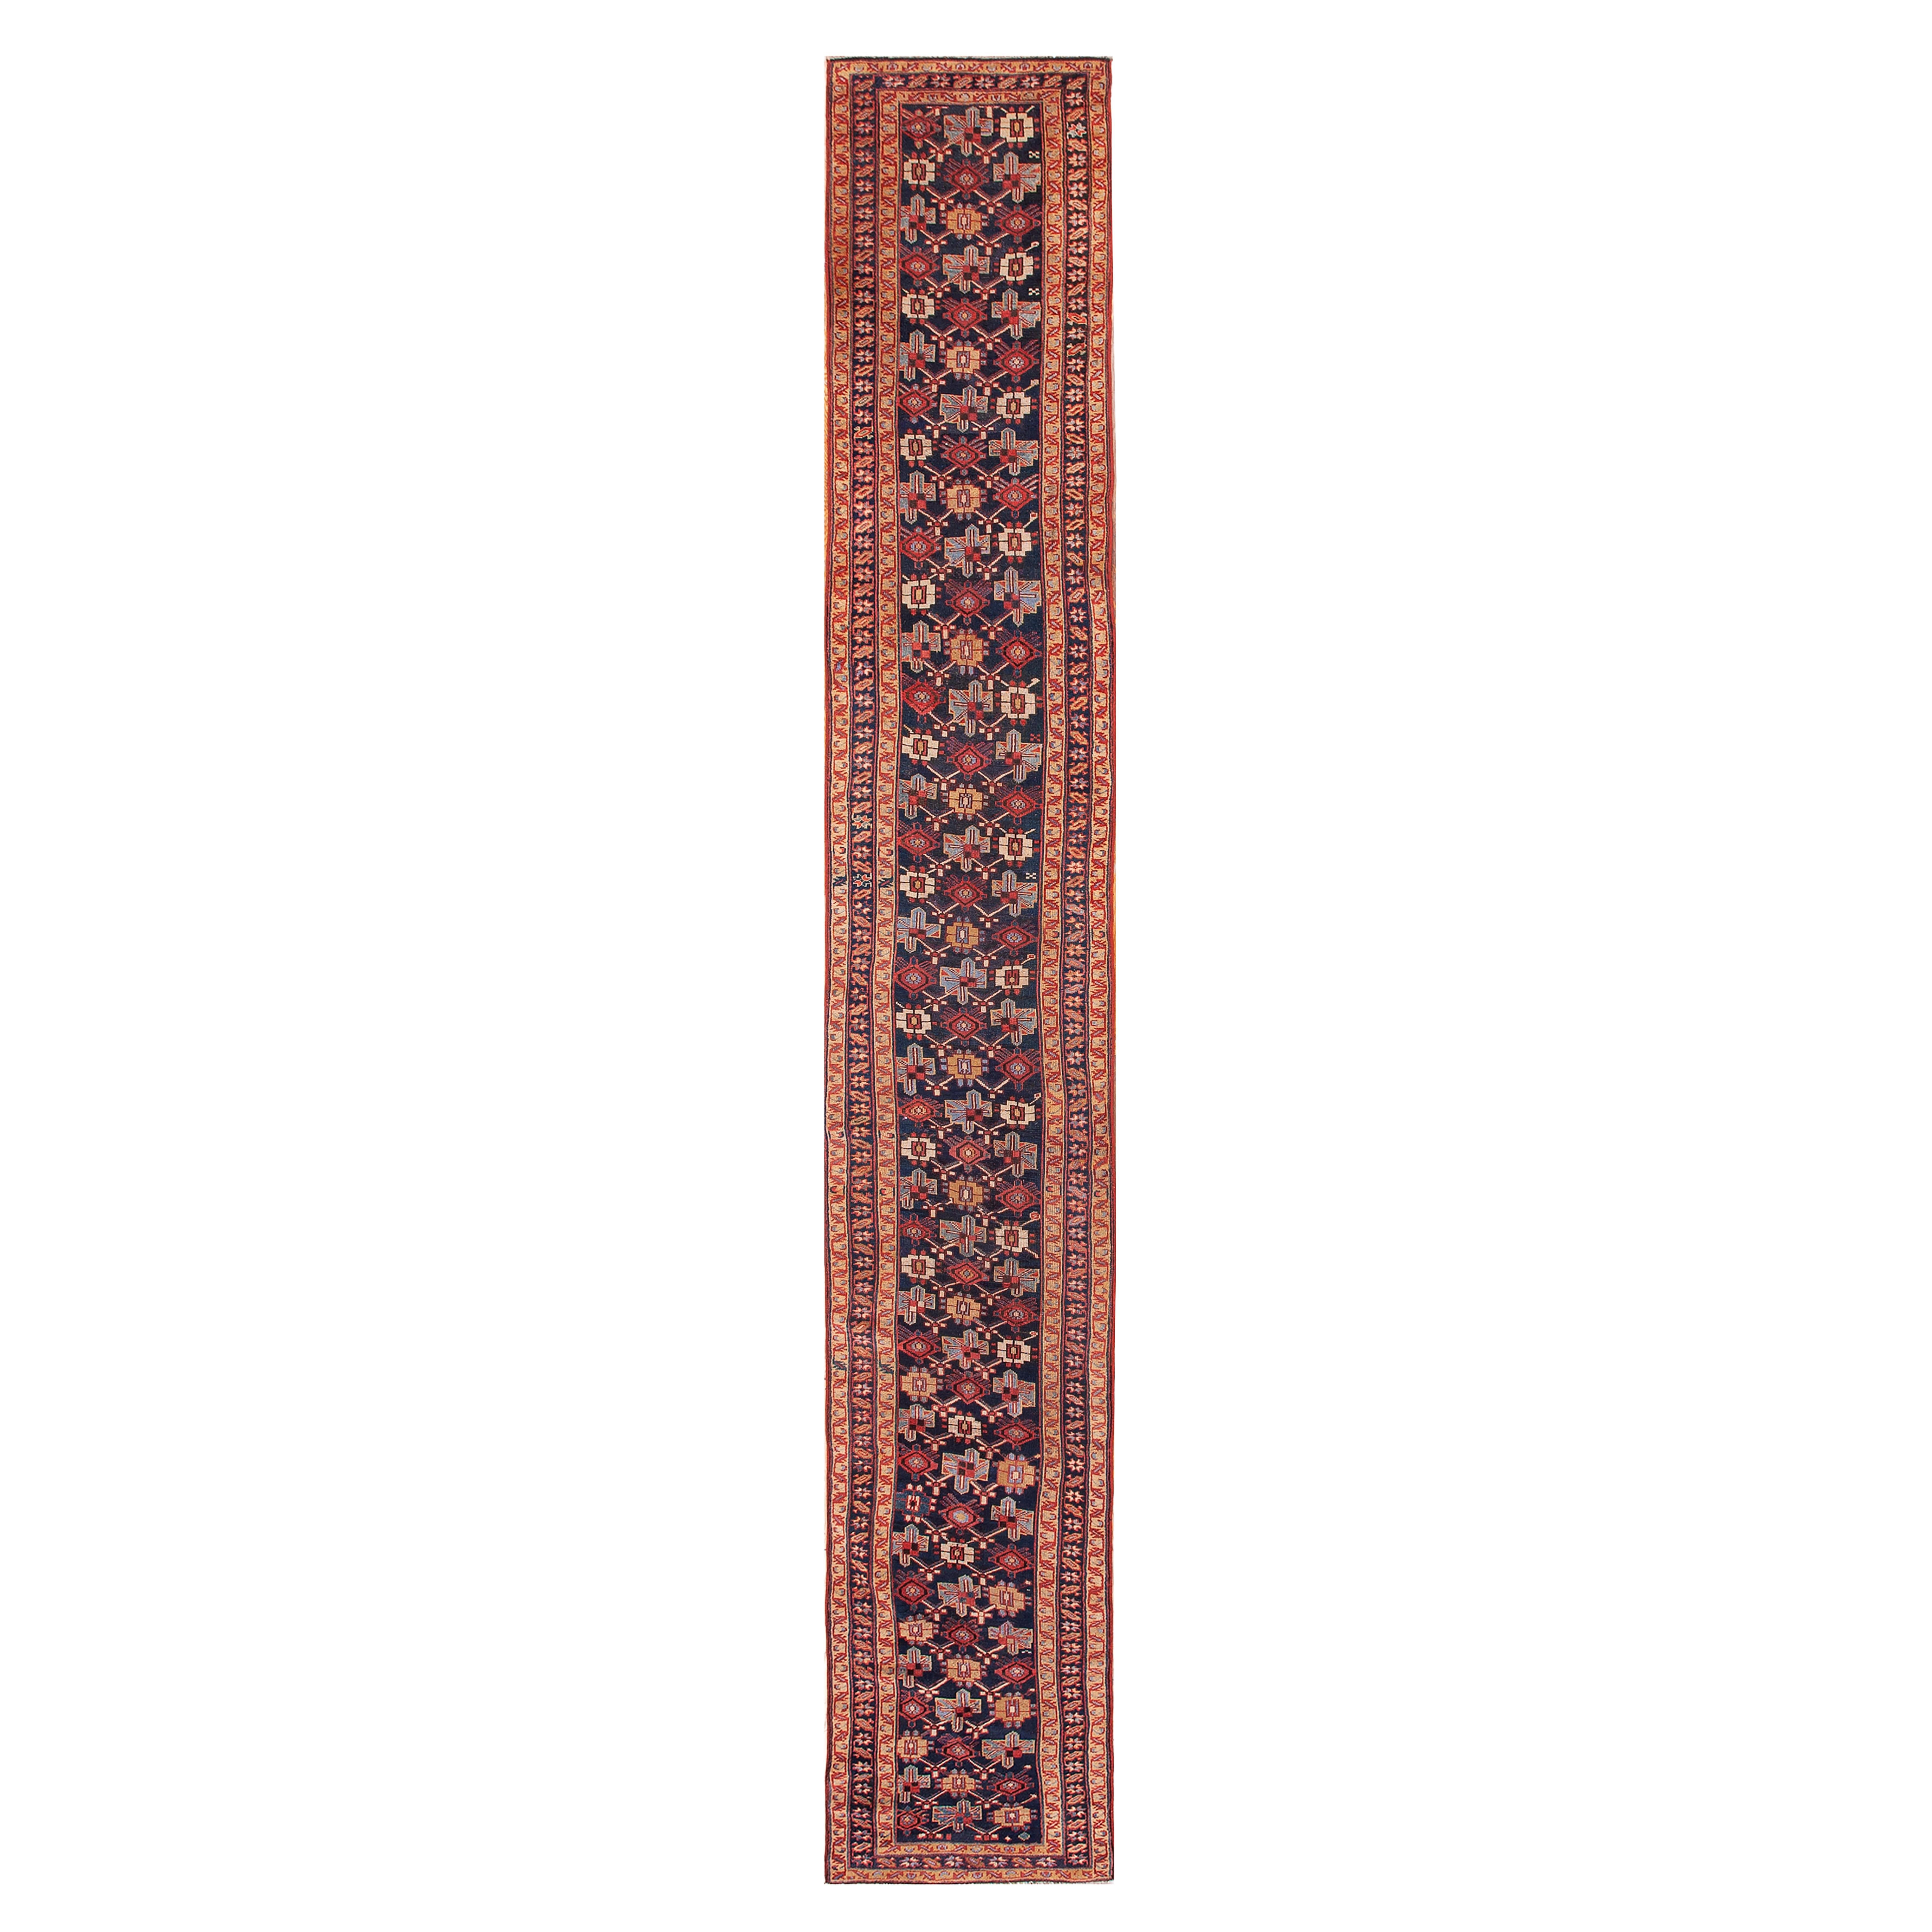 W. Persischer Kurdischer Teppich aus dem 19. Jahrhundert ( 2'6" x 16' - 76 x 488")